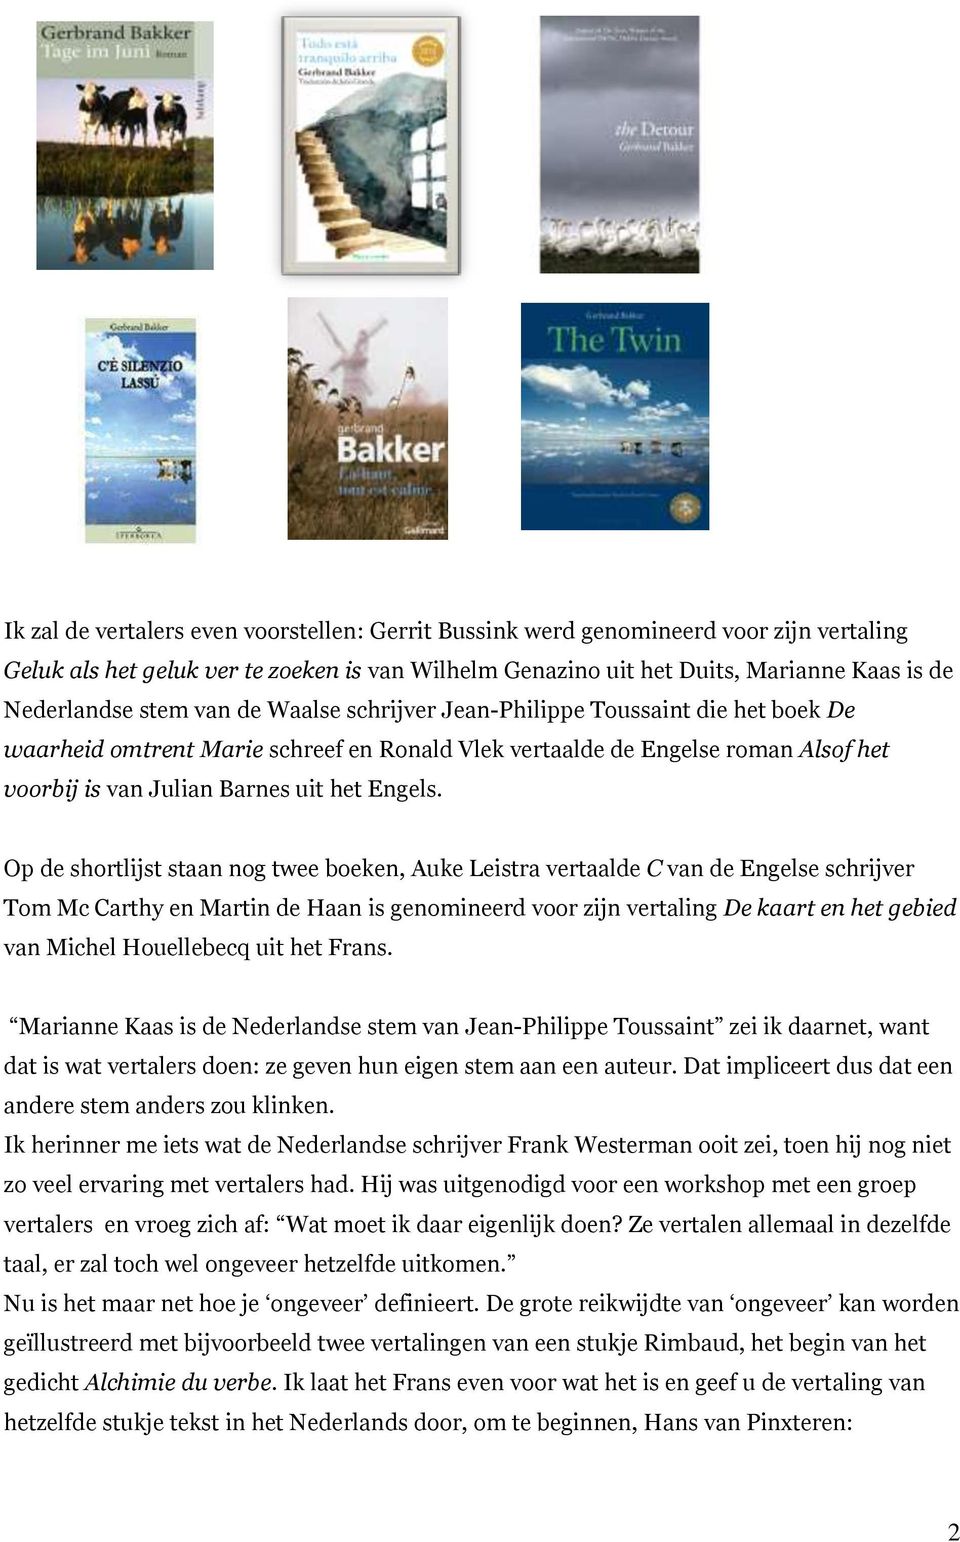 Op de shortlijst staan nog twee boeken, Auke Leistra vertaalde C van de Engelse schrijver Tom Mc Carthy en Martin de Haan is genomineerd voor zijn vertaling De kaart en het gebied van Michel